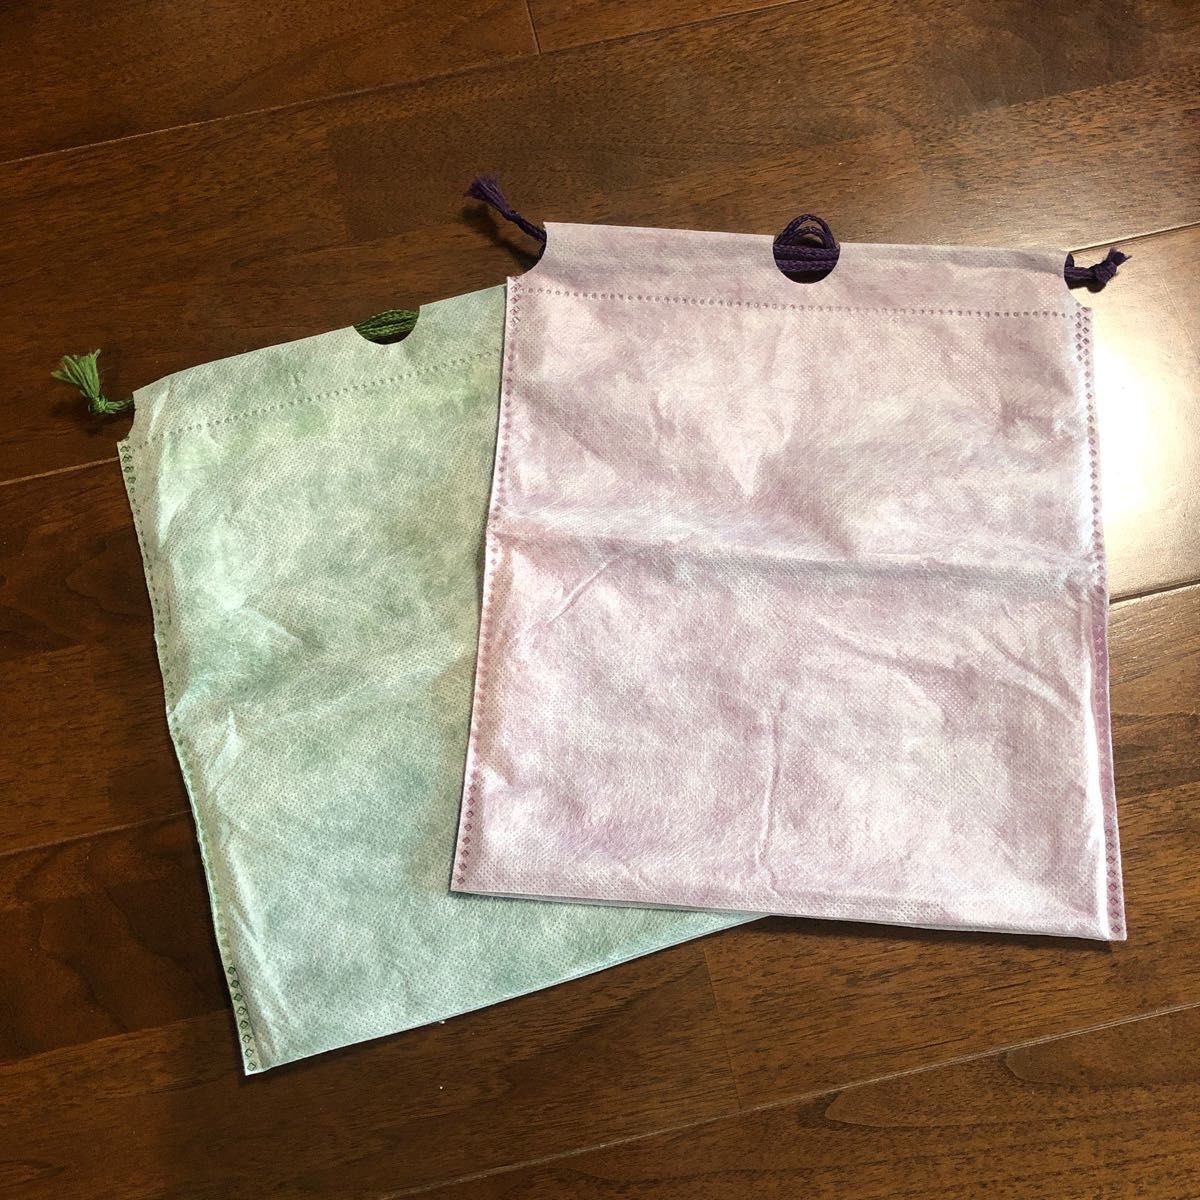 アメニティ 不織布防水巾着袋 二枚セットグリーン 緑 パープル 紫サイズ